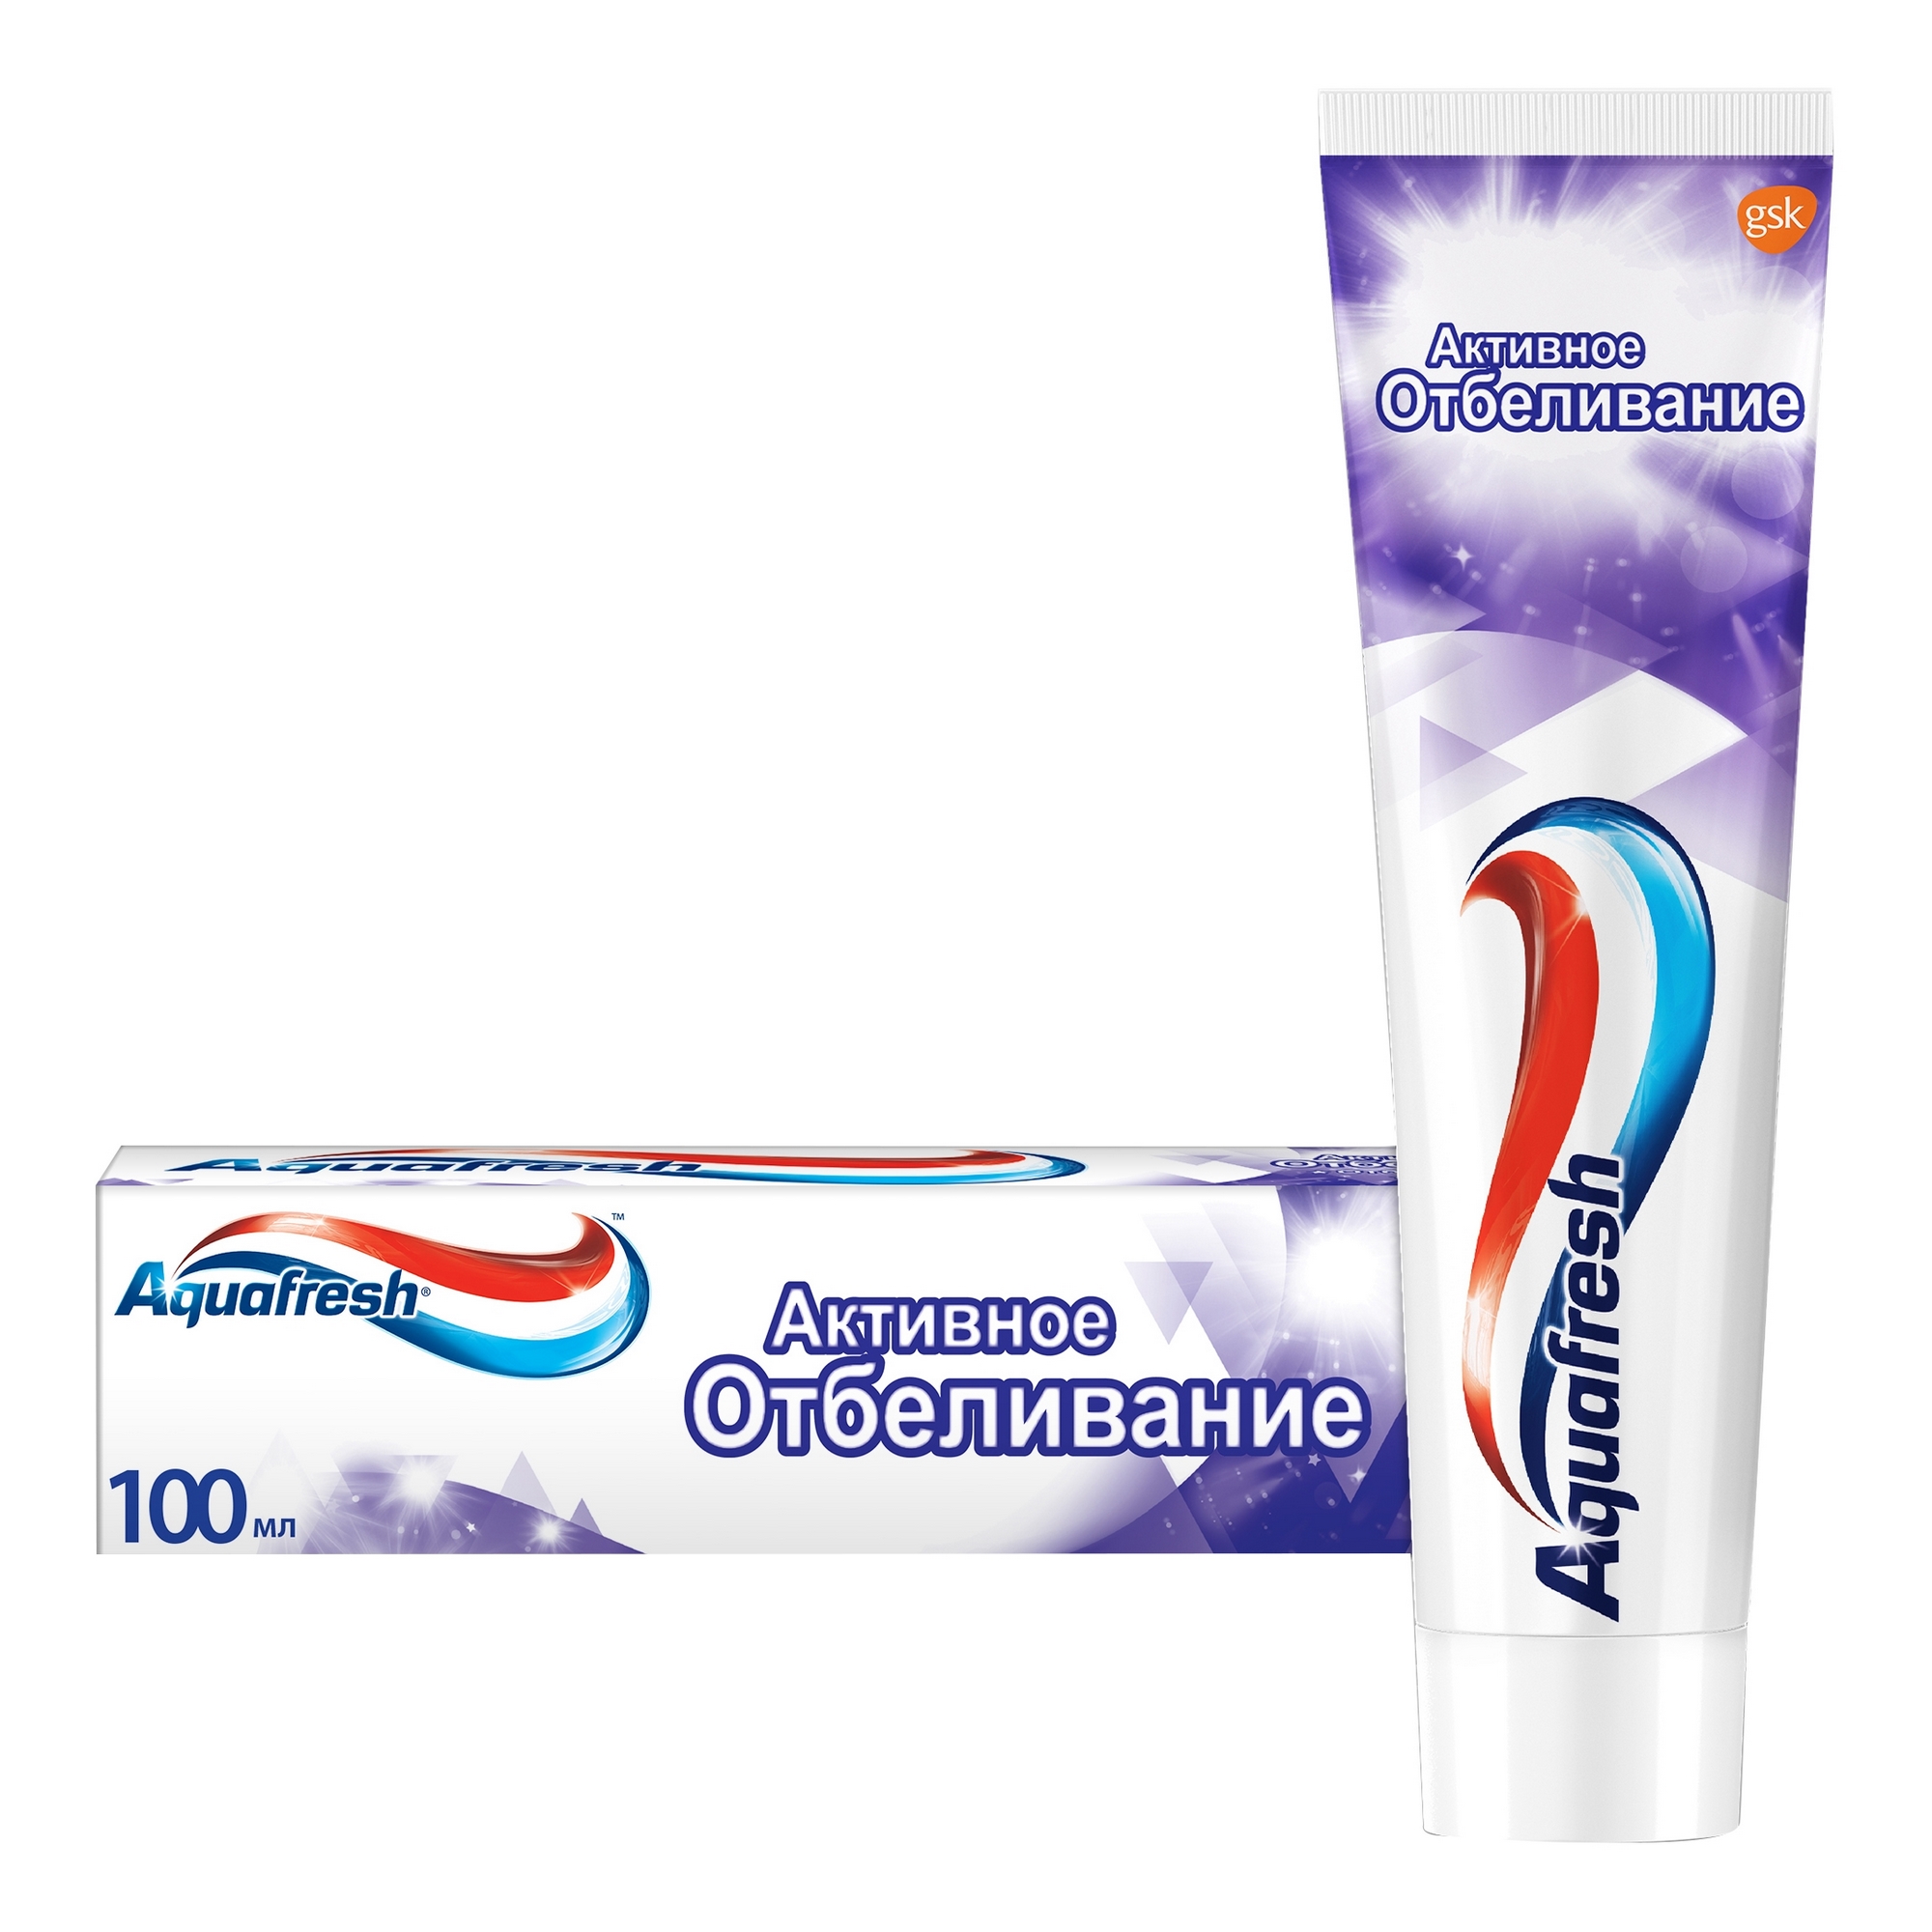 Зубная паста Aquafresh Активное отбеливание 100 мл зубная паста aquafresh активное отбеливание 100 мл х 2 шт